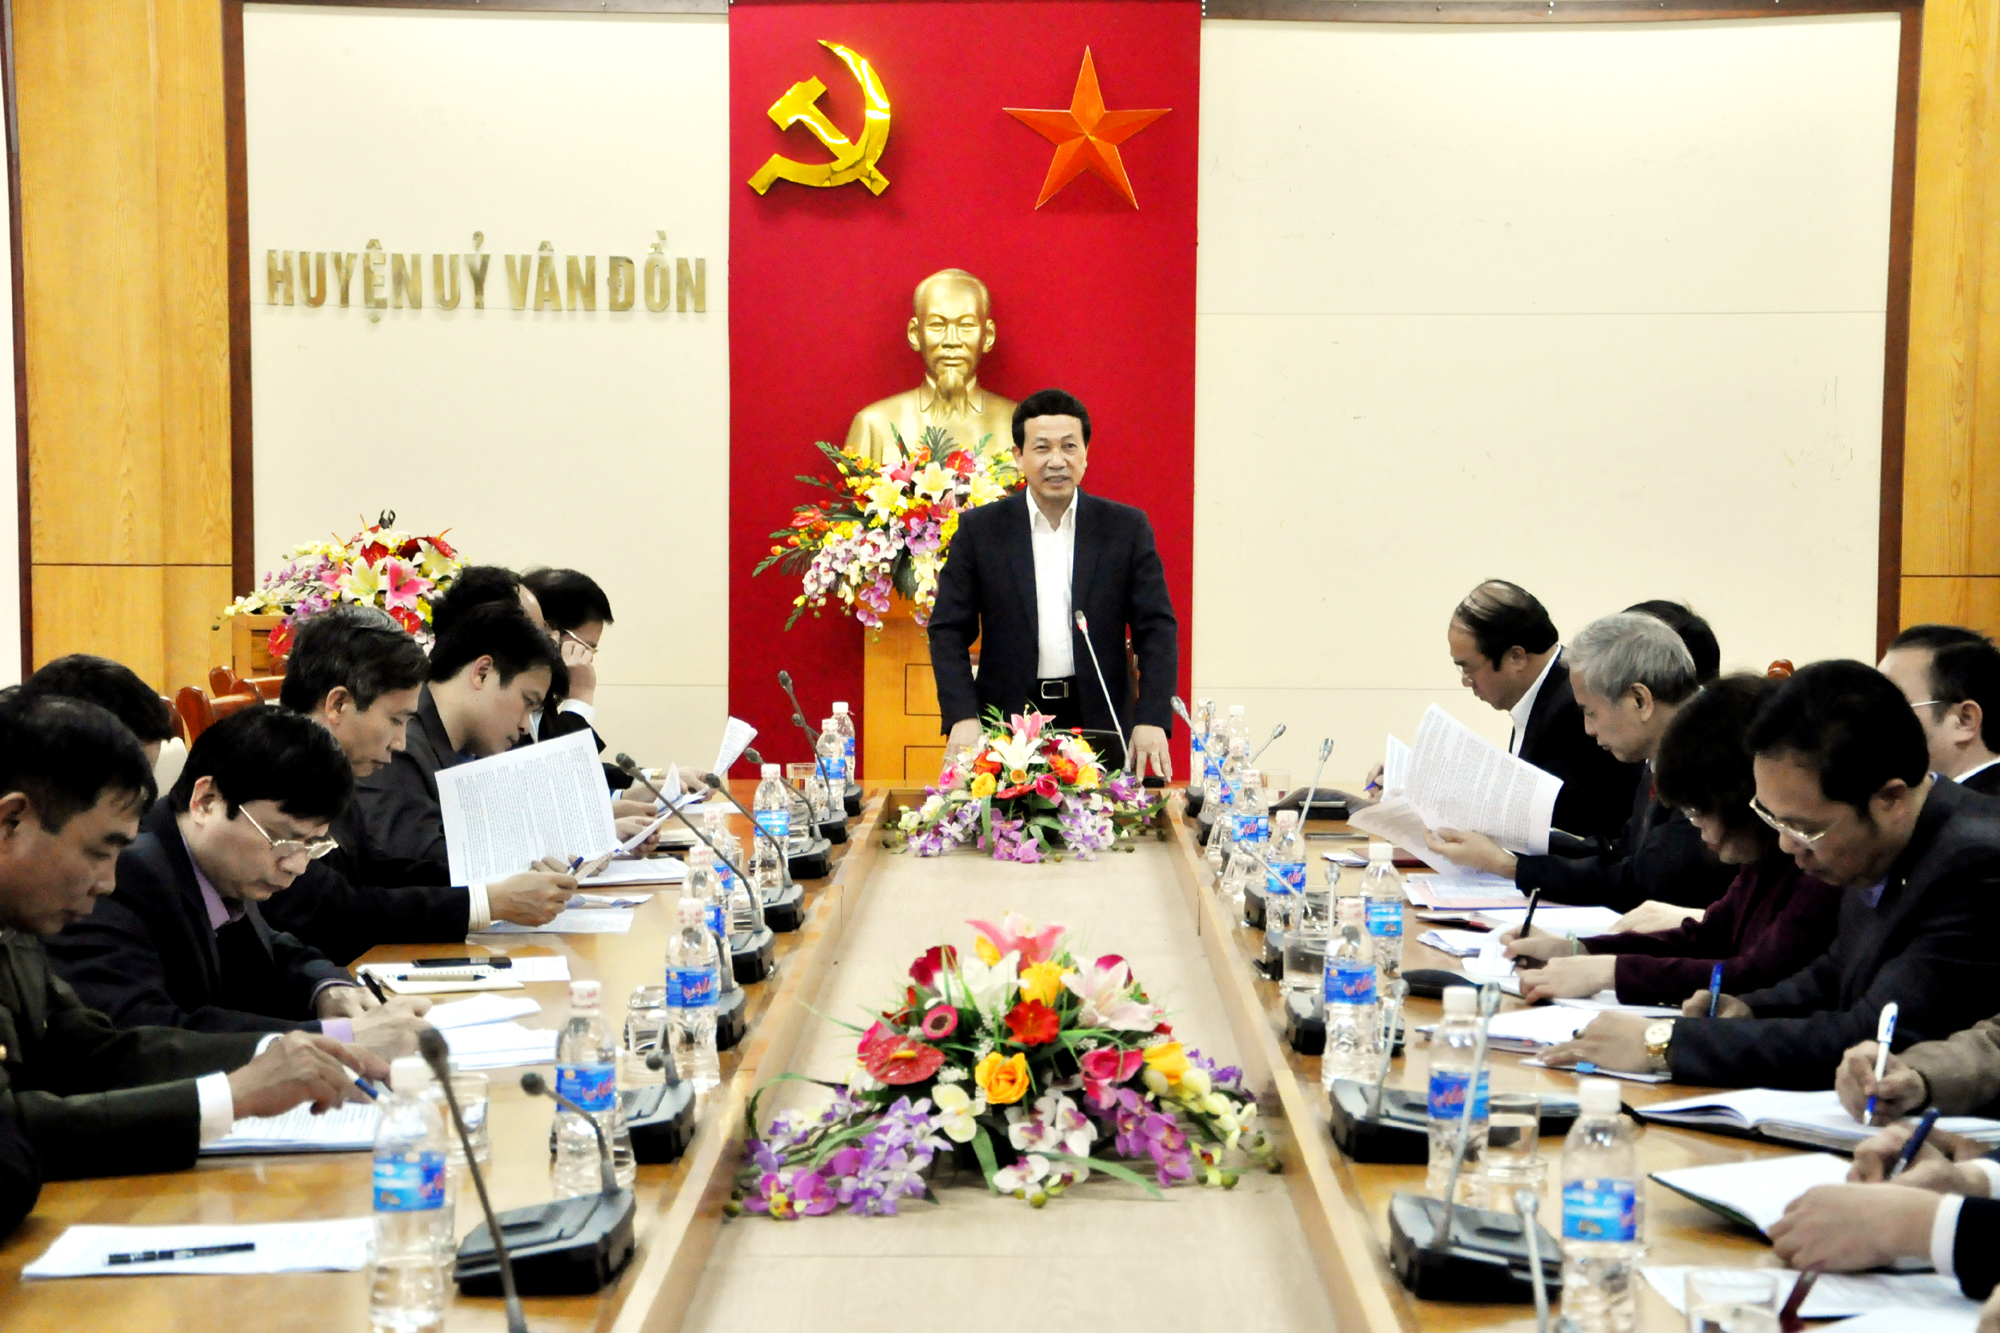  Đồng chí Nguyễn Văn Thành, Phó Chủ tịch UBND tỉnh, Chỉ huy trưởng “Chiến dịch Quang Trung” kết luận buổi làm việc với huyện Vân Đồn.